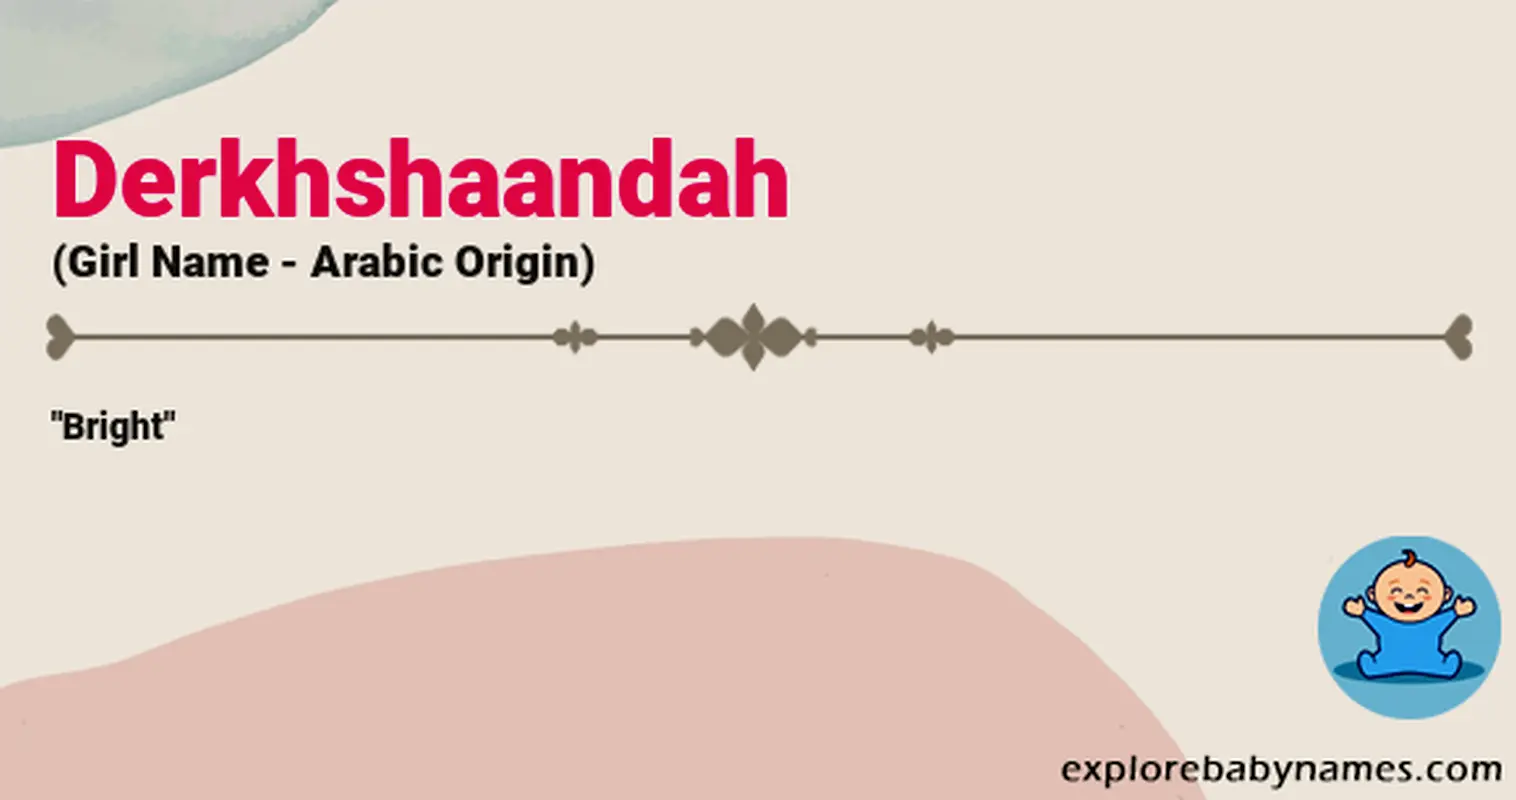 Meaning of Derkhshaandah